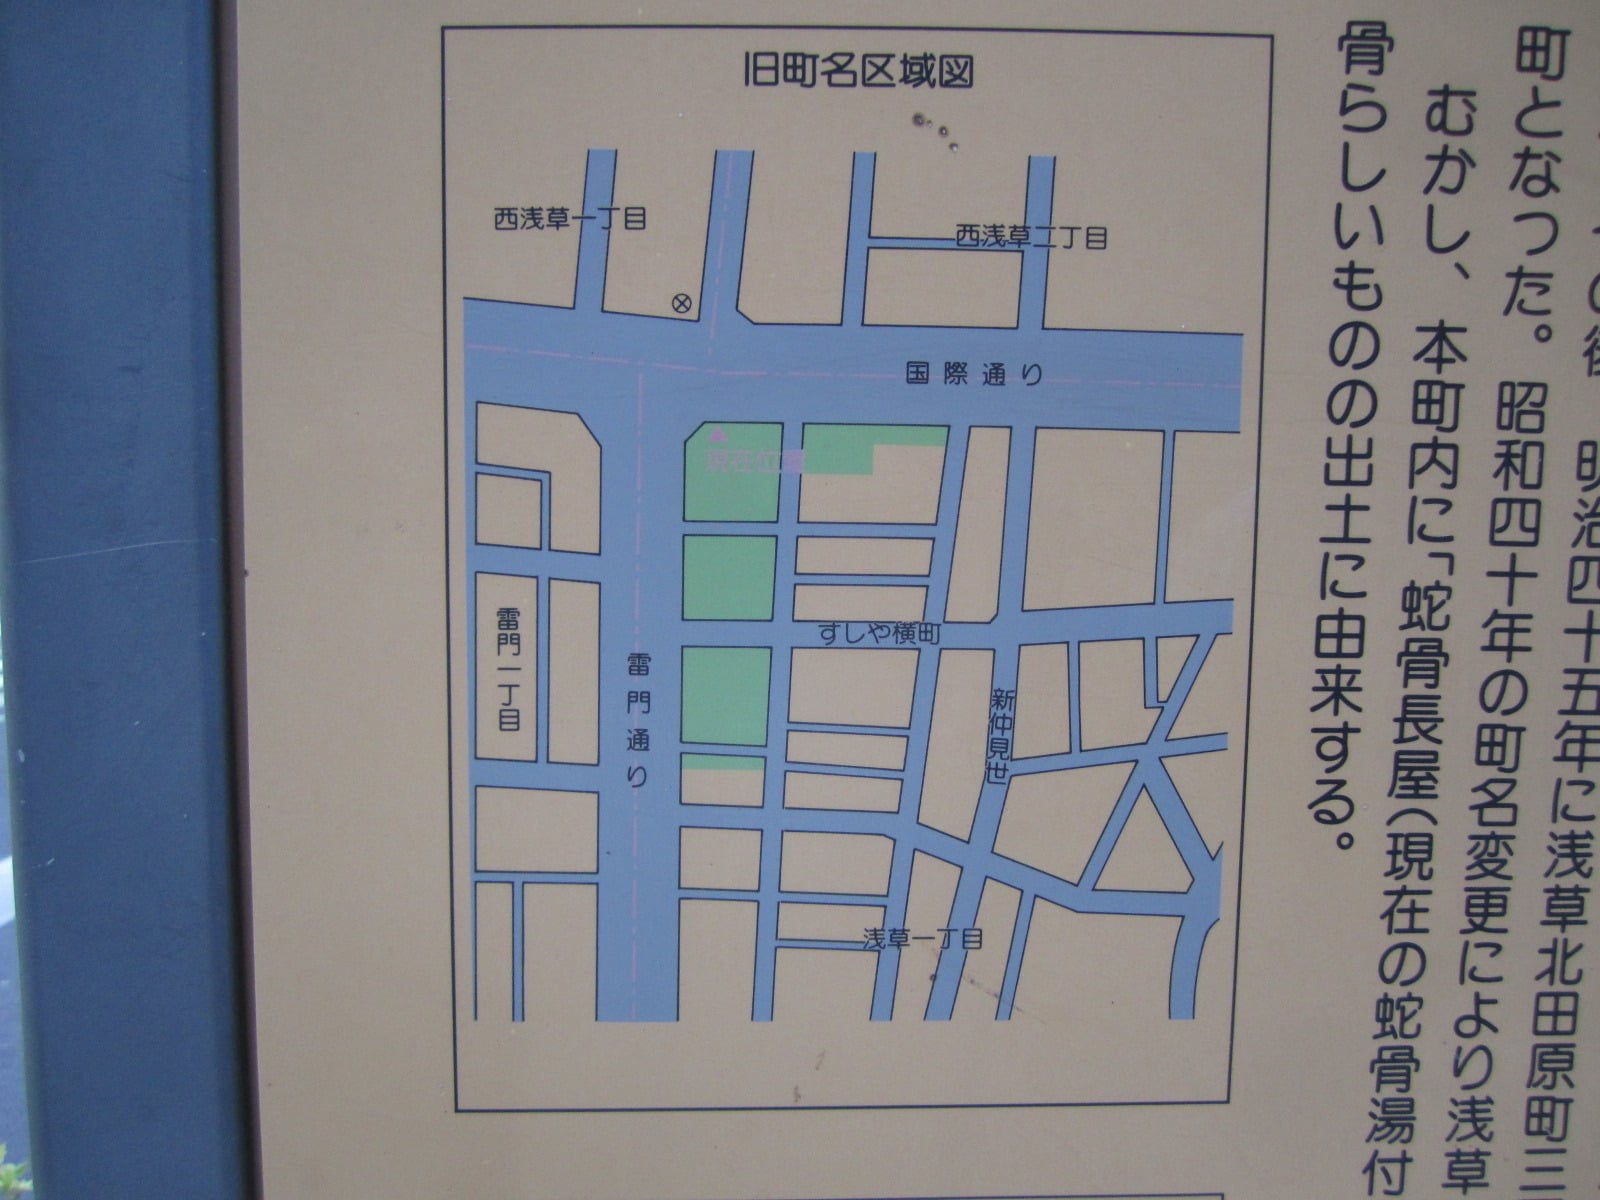 現在の地図にあてはめた浅草北田原町の区域図